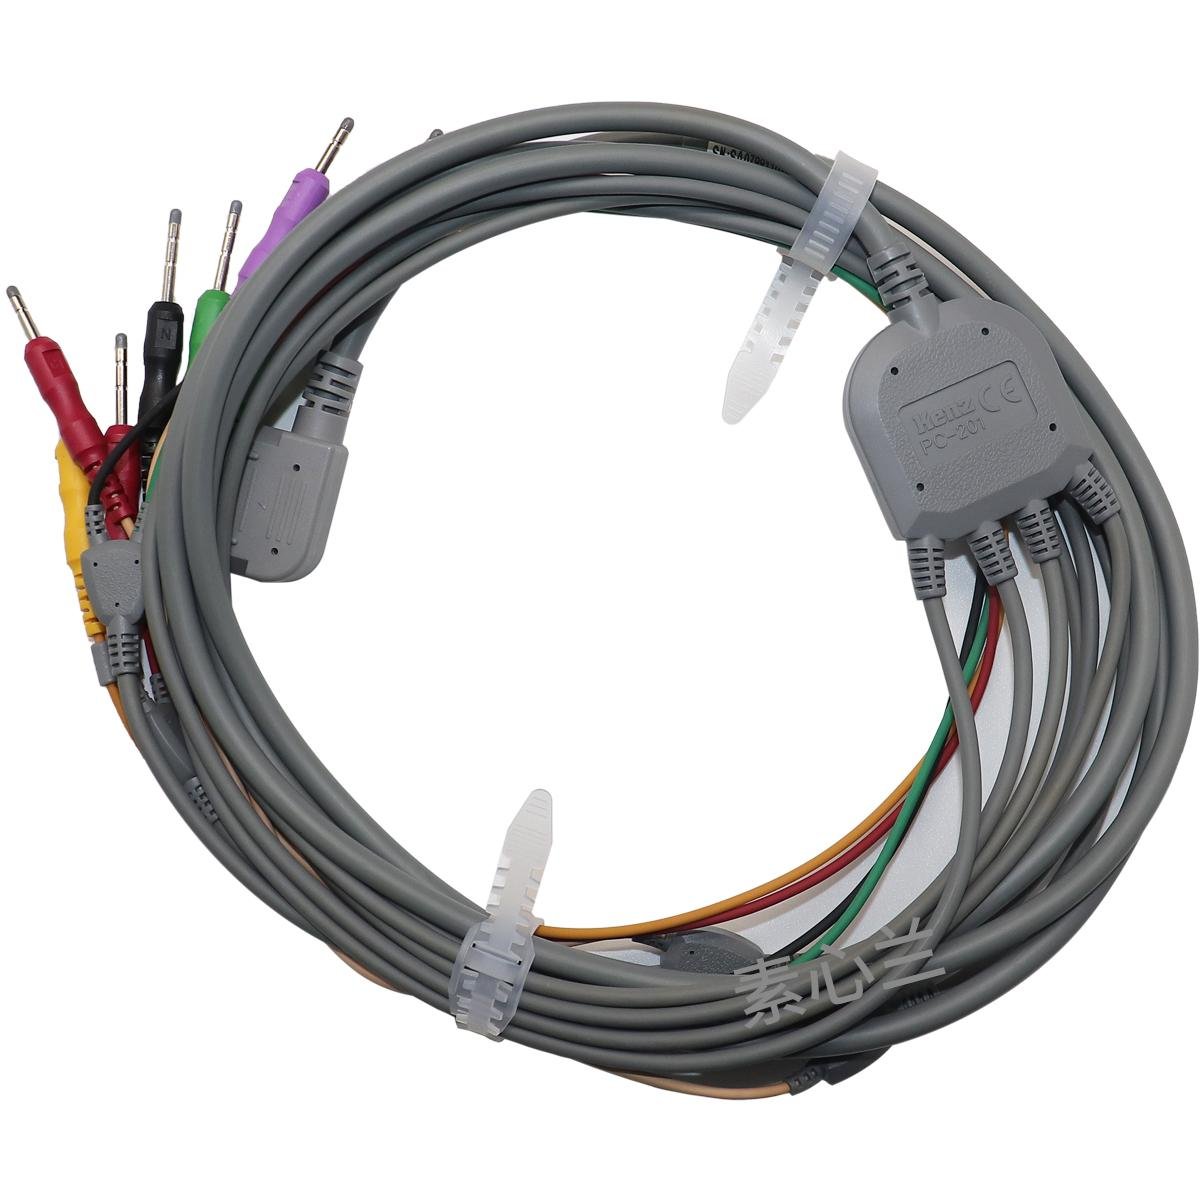 Original Kenz Cardico 1211 10 cables pin ECG cable leadwire PC-201 cable ecg